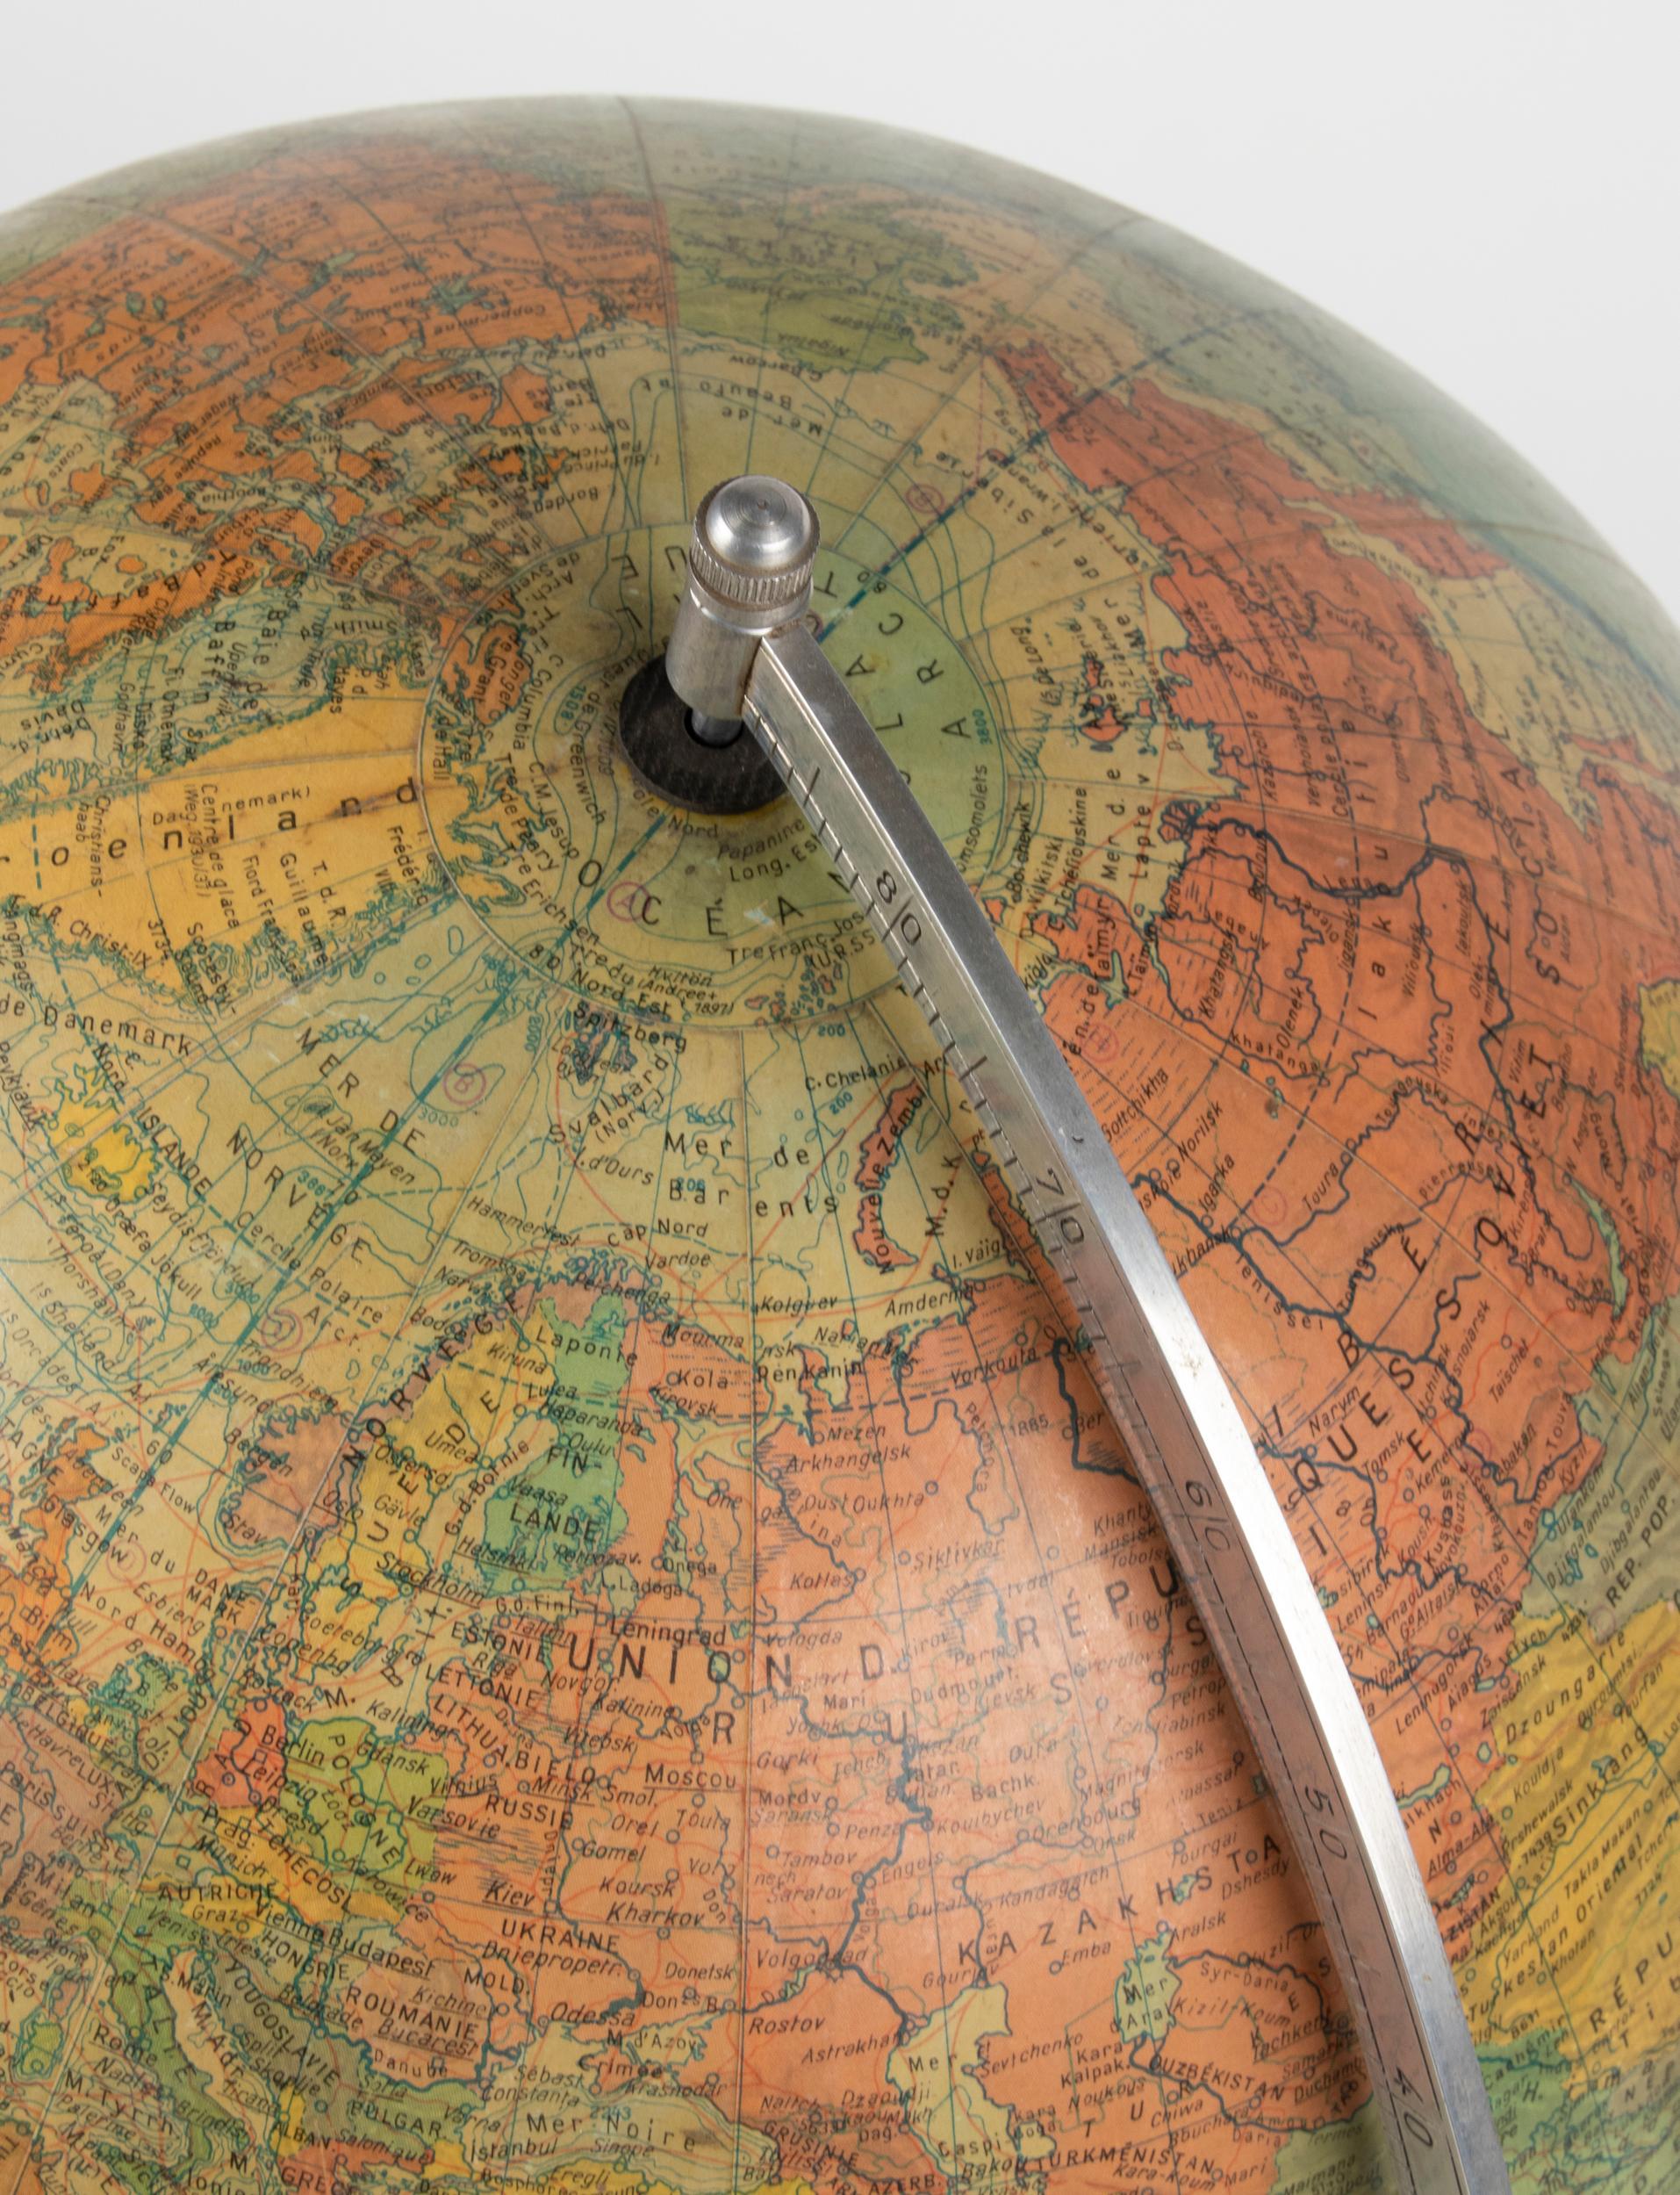 Joli globe vintage, publié dans les années 1960 par le professeur docteur Arthur Kraus. Le globe a une base en bois, chêne. La sphère elle-même est faite de carton recouvert de papier.
Le rapporteur est en métal chromé.
Objet décoratif.